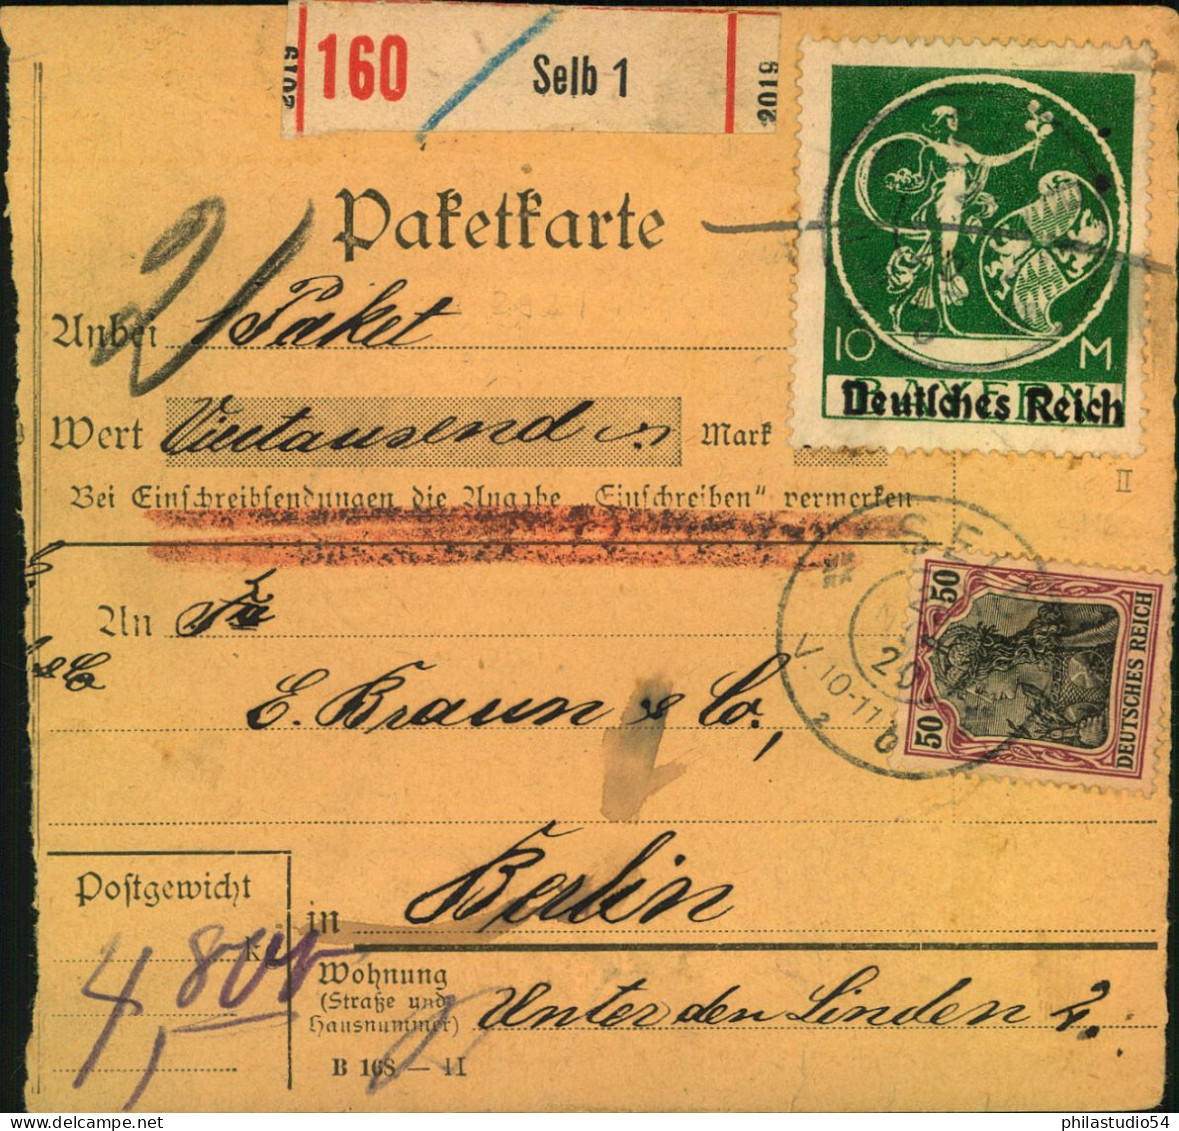 1920, Wert-Paketkartenstammteil Mit 10 M Bayernabschied, Aufdruck Type II, Mit Kopierstiftkreuz Entwertet Mit 50 Pfg. Ge - Covers & Documents